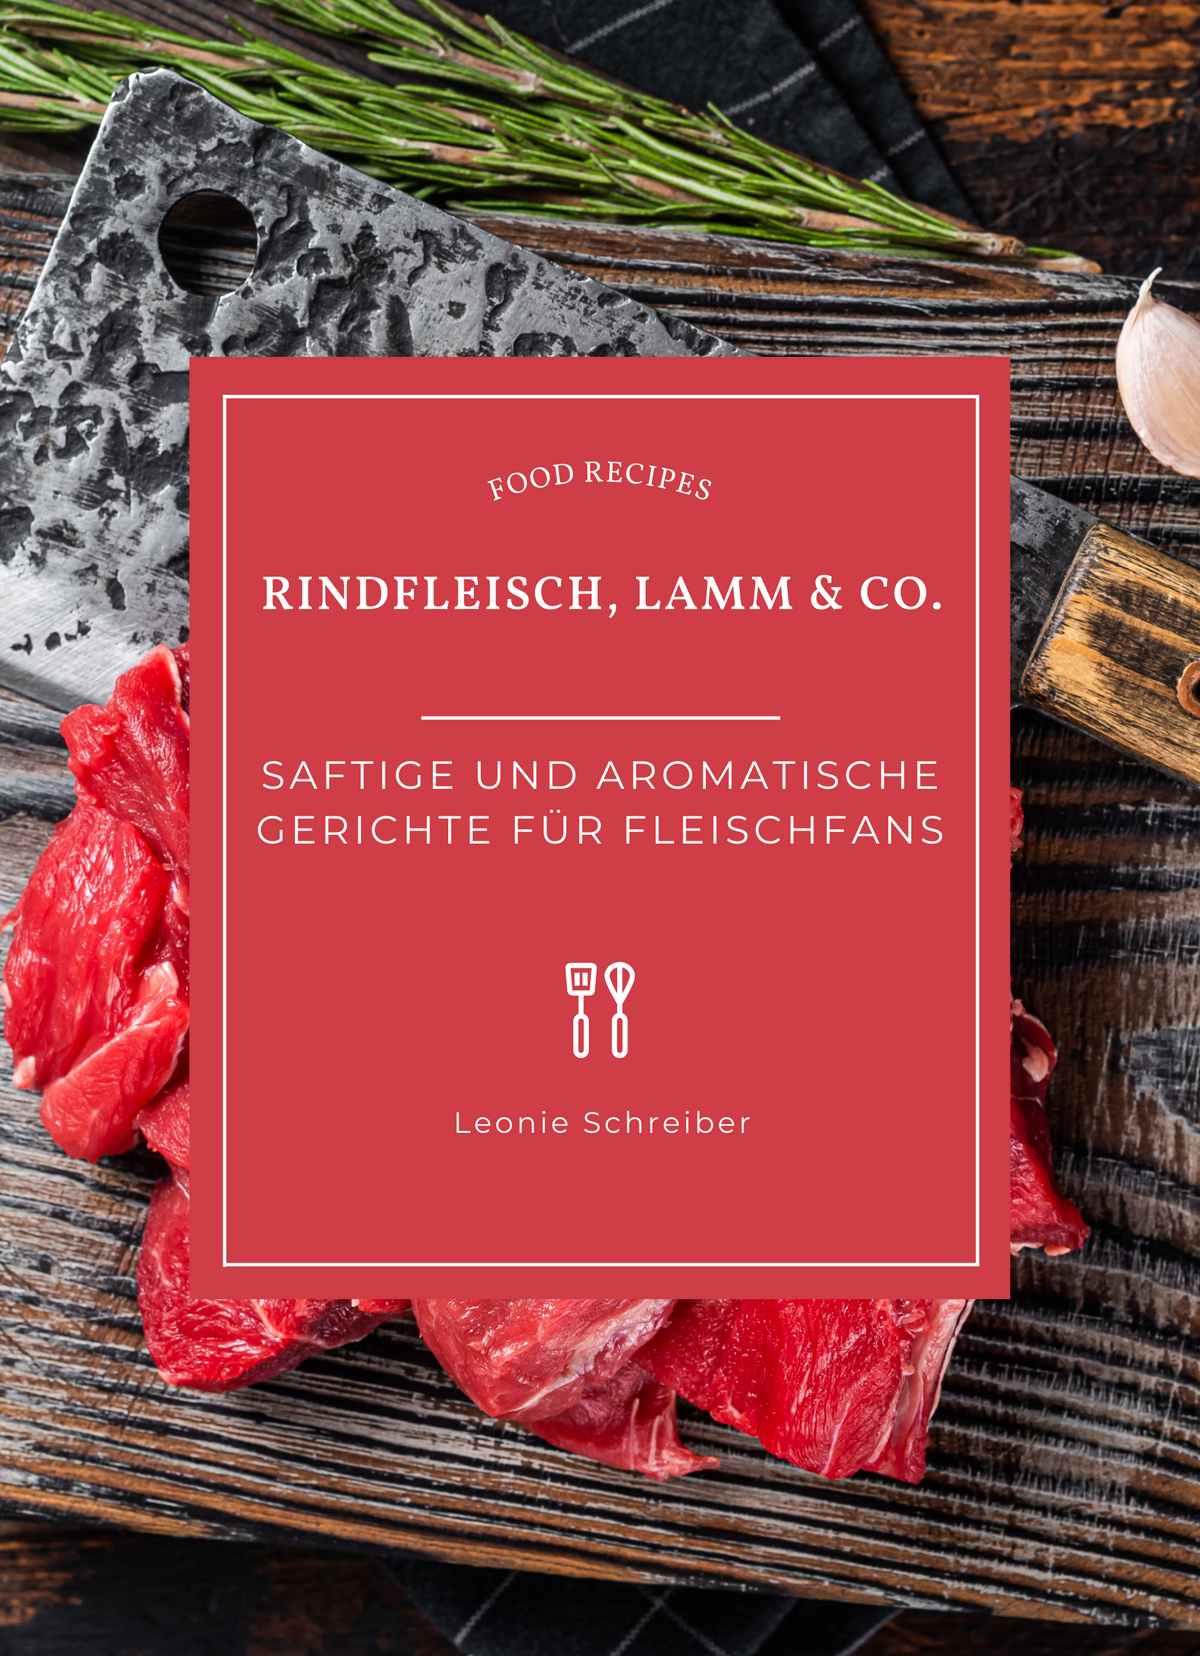 Rindfleisch, Lamm & Co.